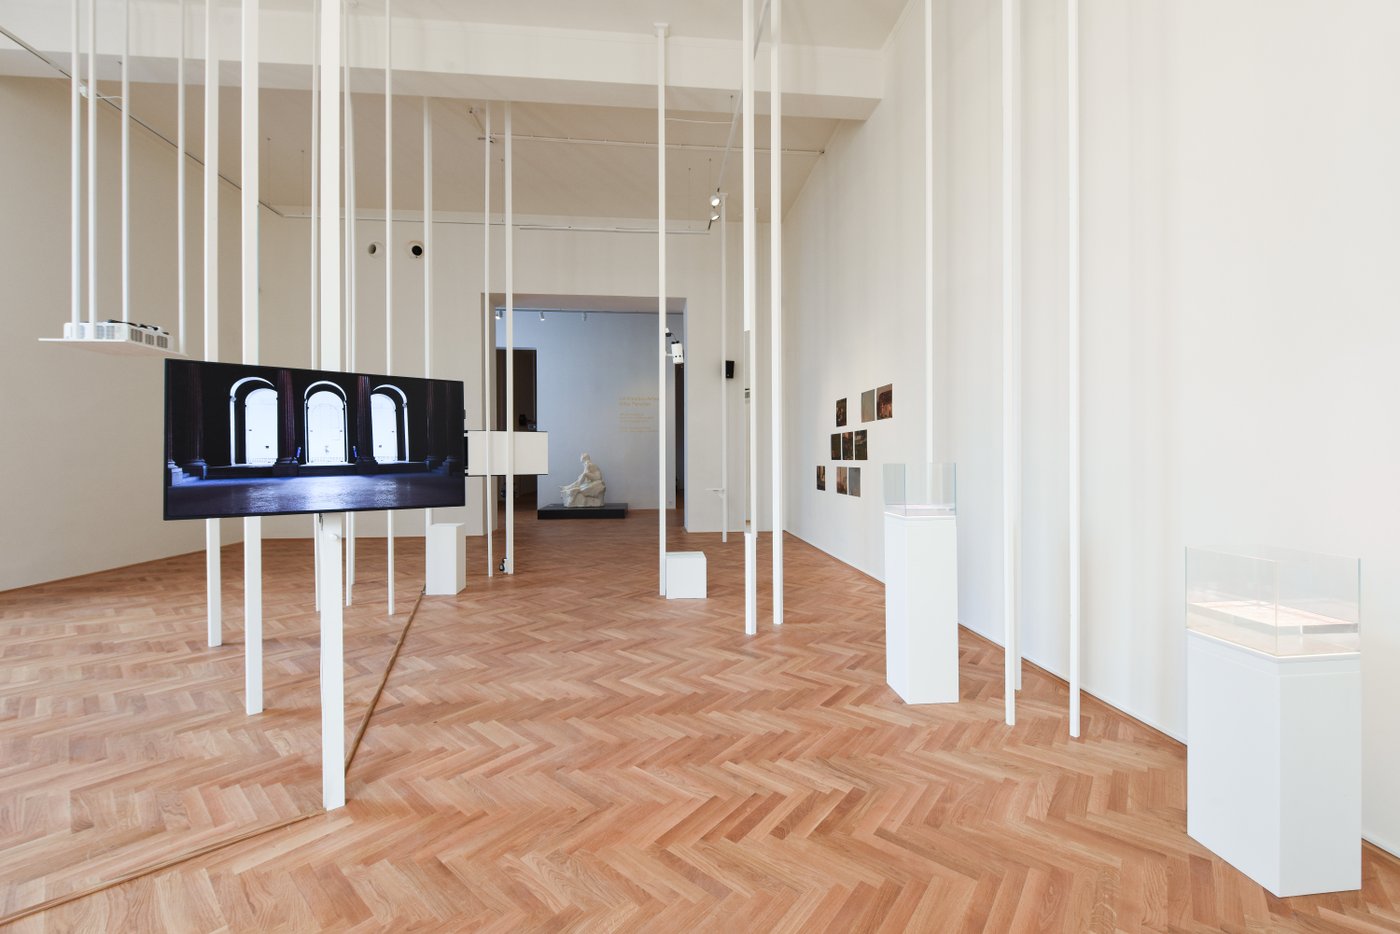 Ausstellungsansicht mit weißen senkrechten Stäben durch den Raum und einem Bildschirm im Vordergrund, an der Wand im Hintergrund Fotos